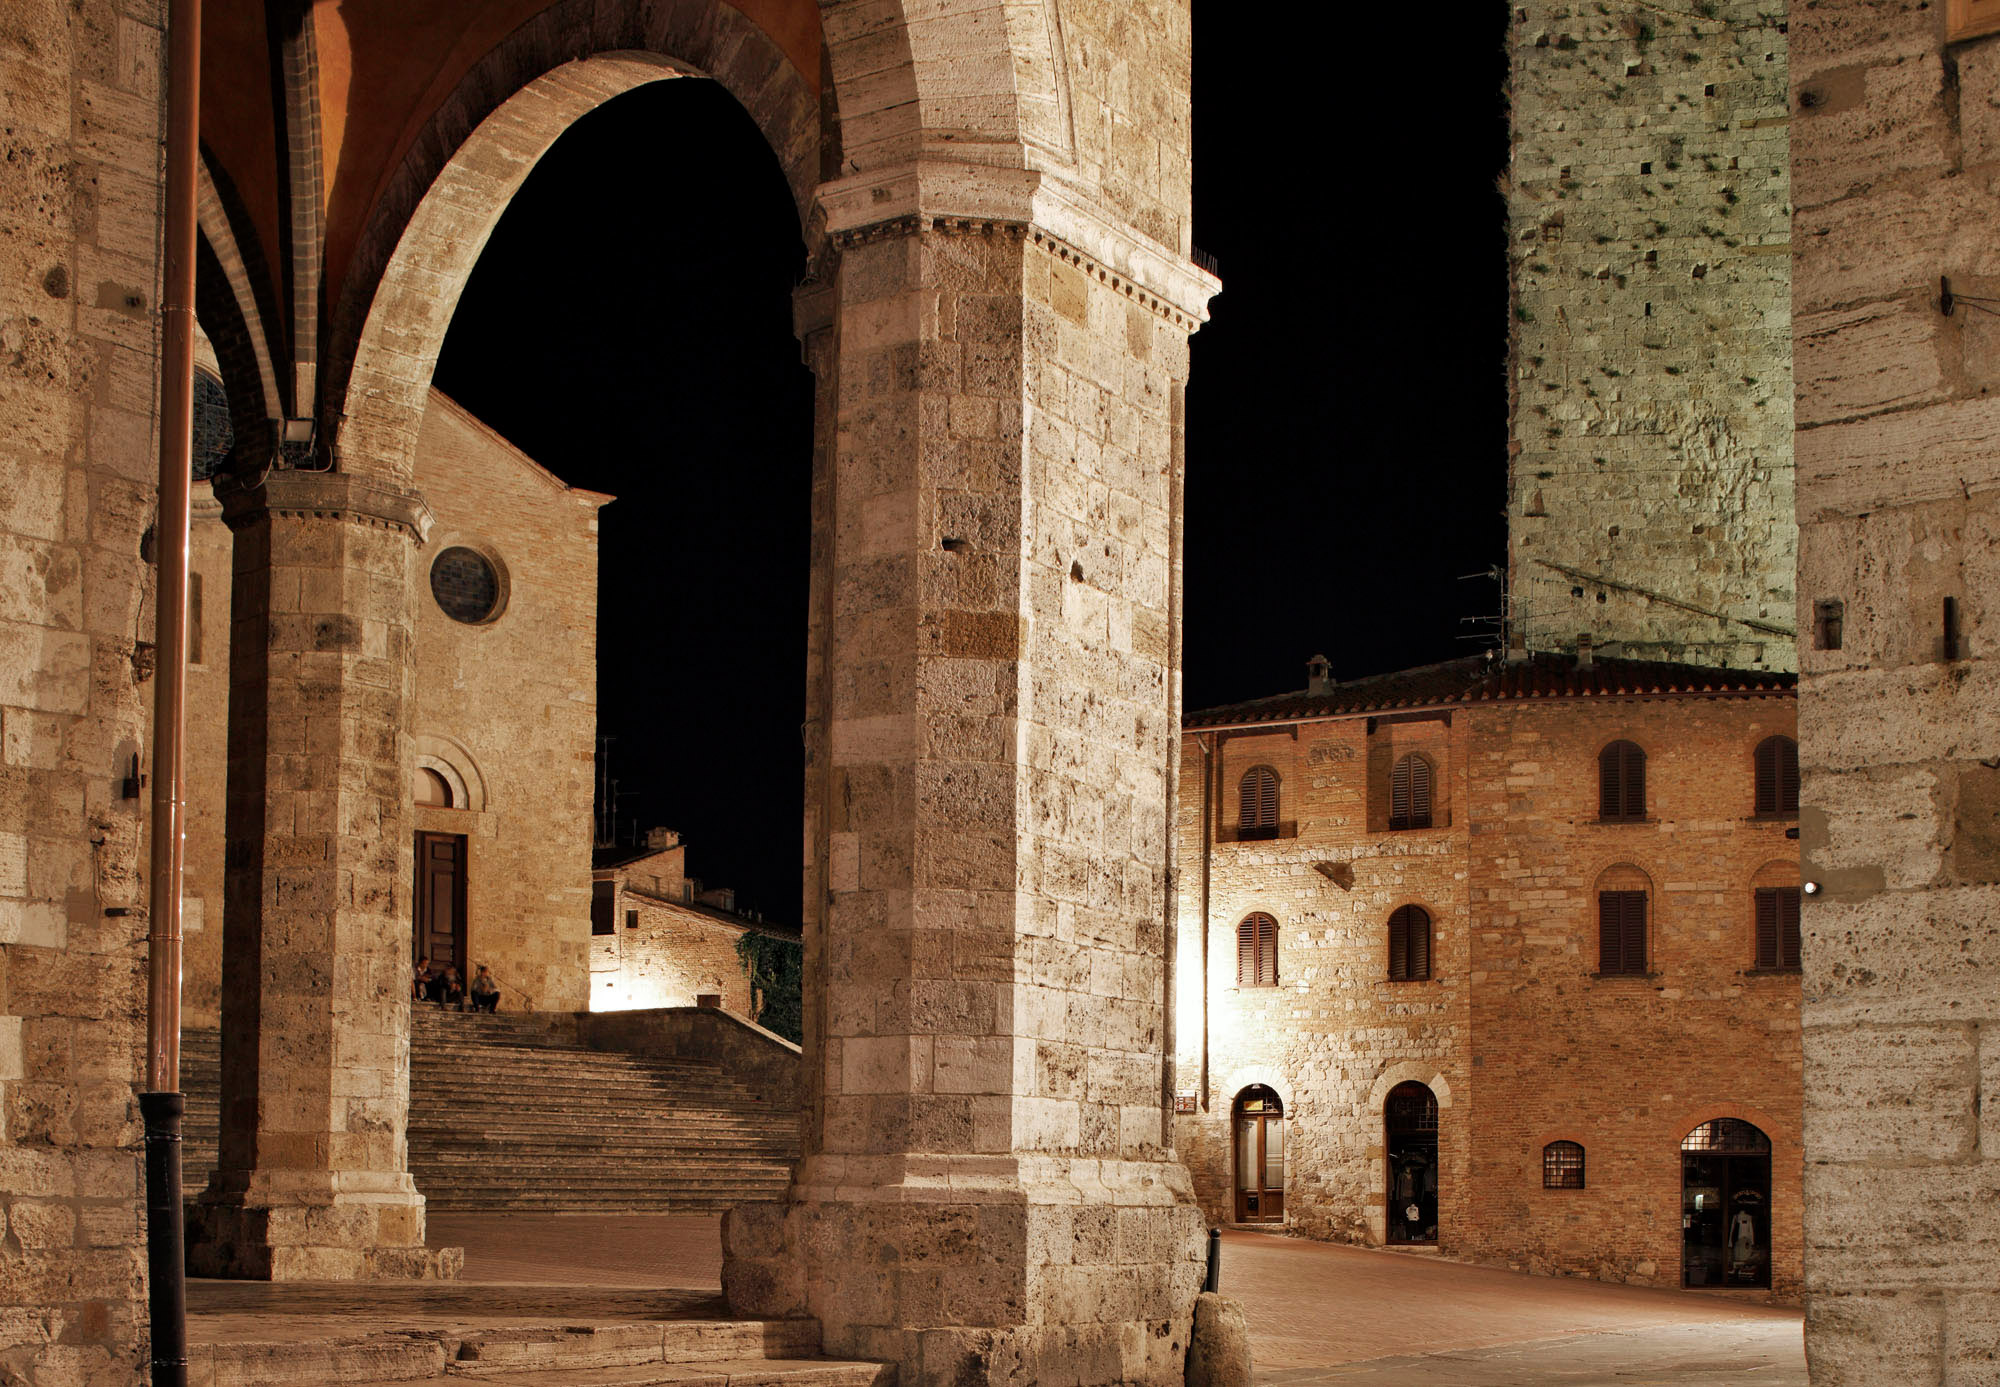 San Gimignano city centre